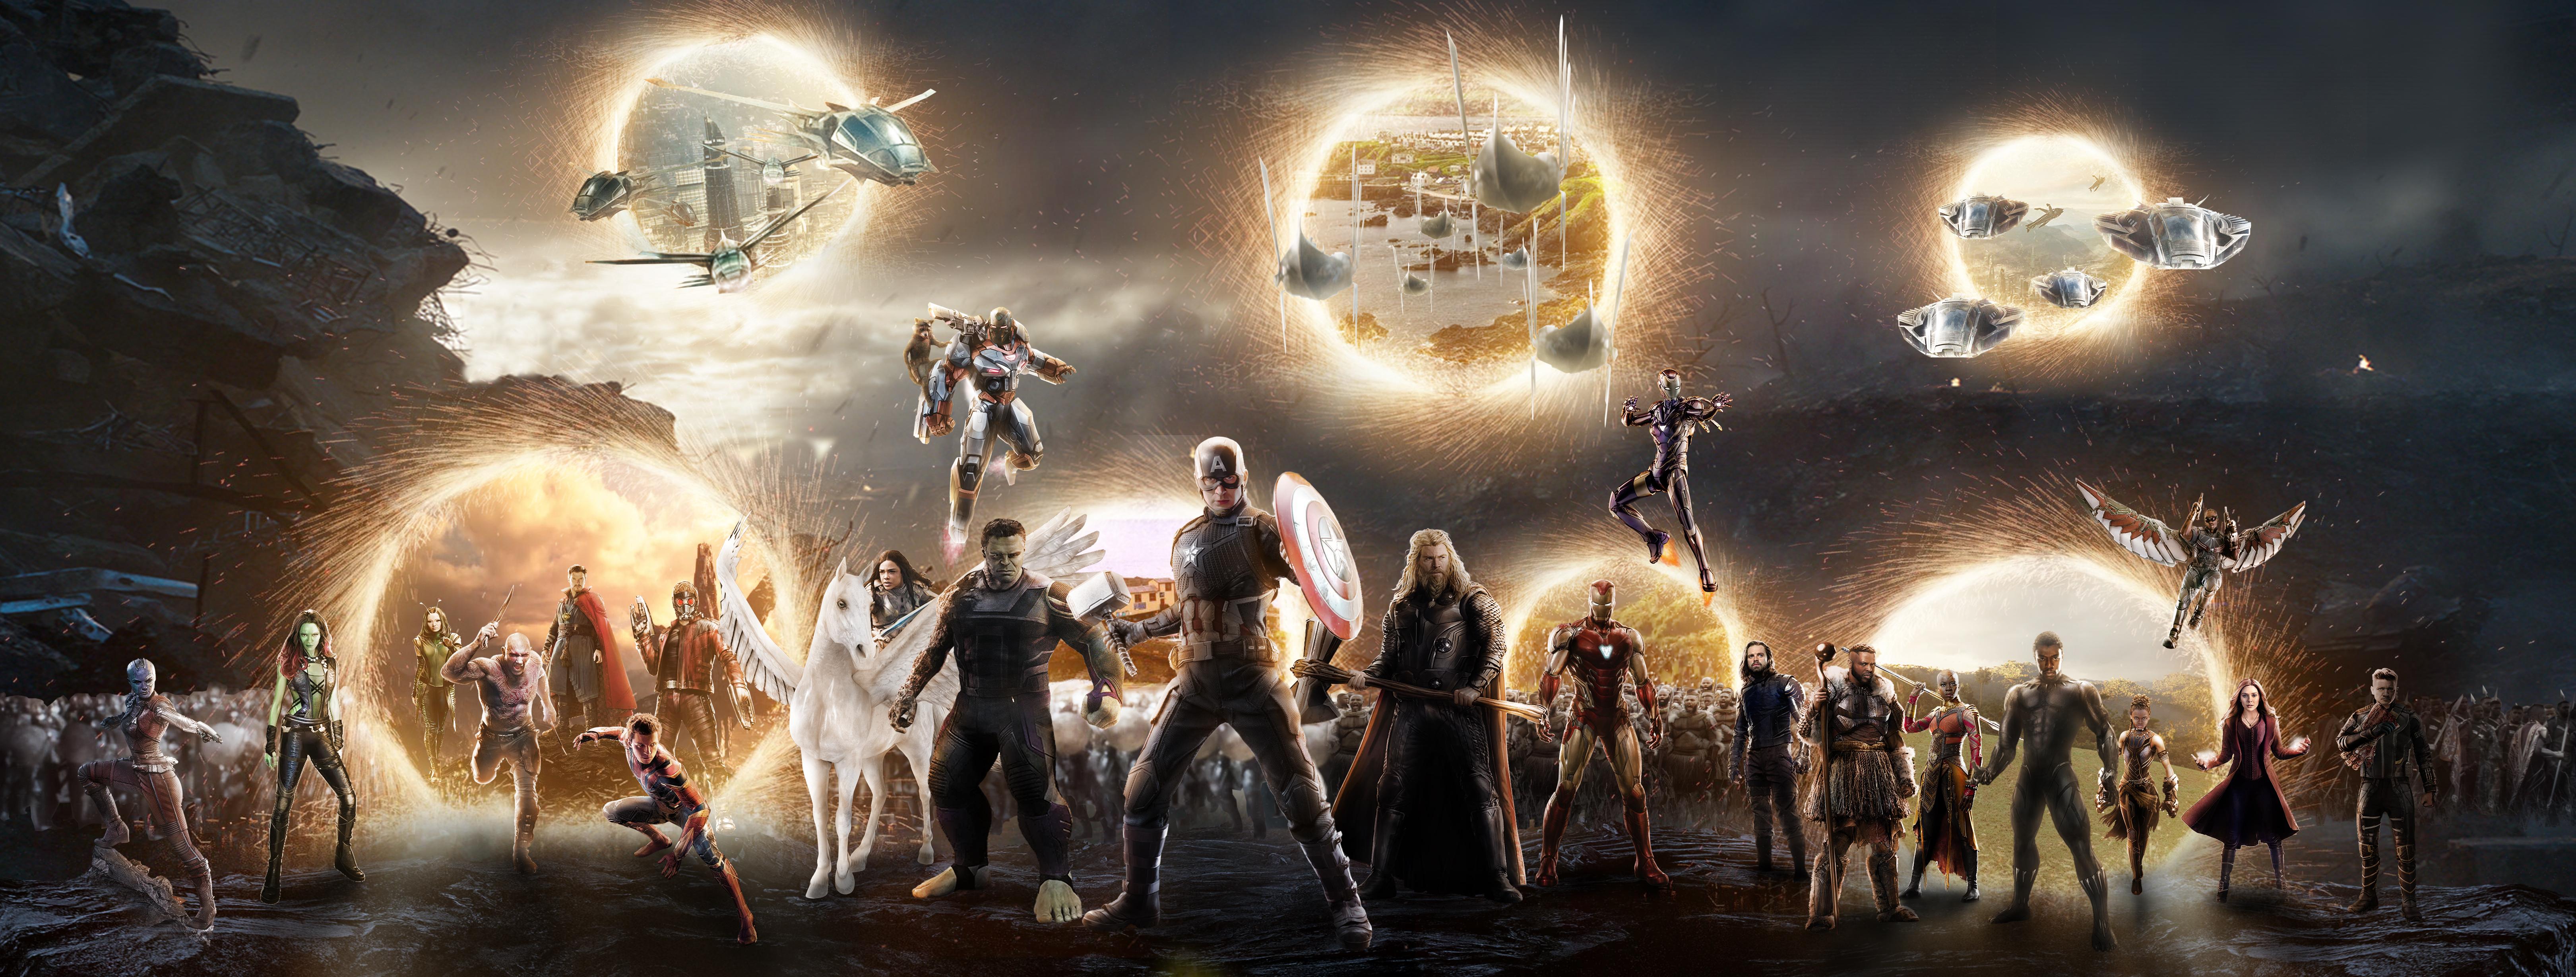 Avengers Endgame Portal Last Scene Wallpapers